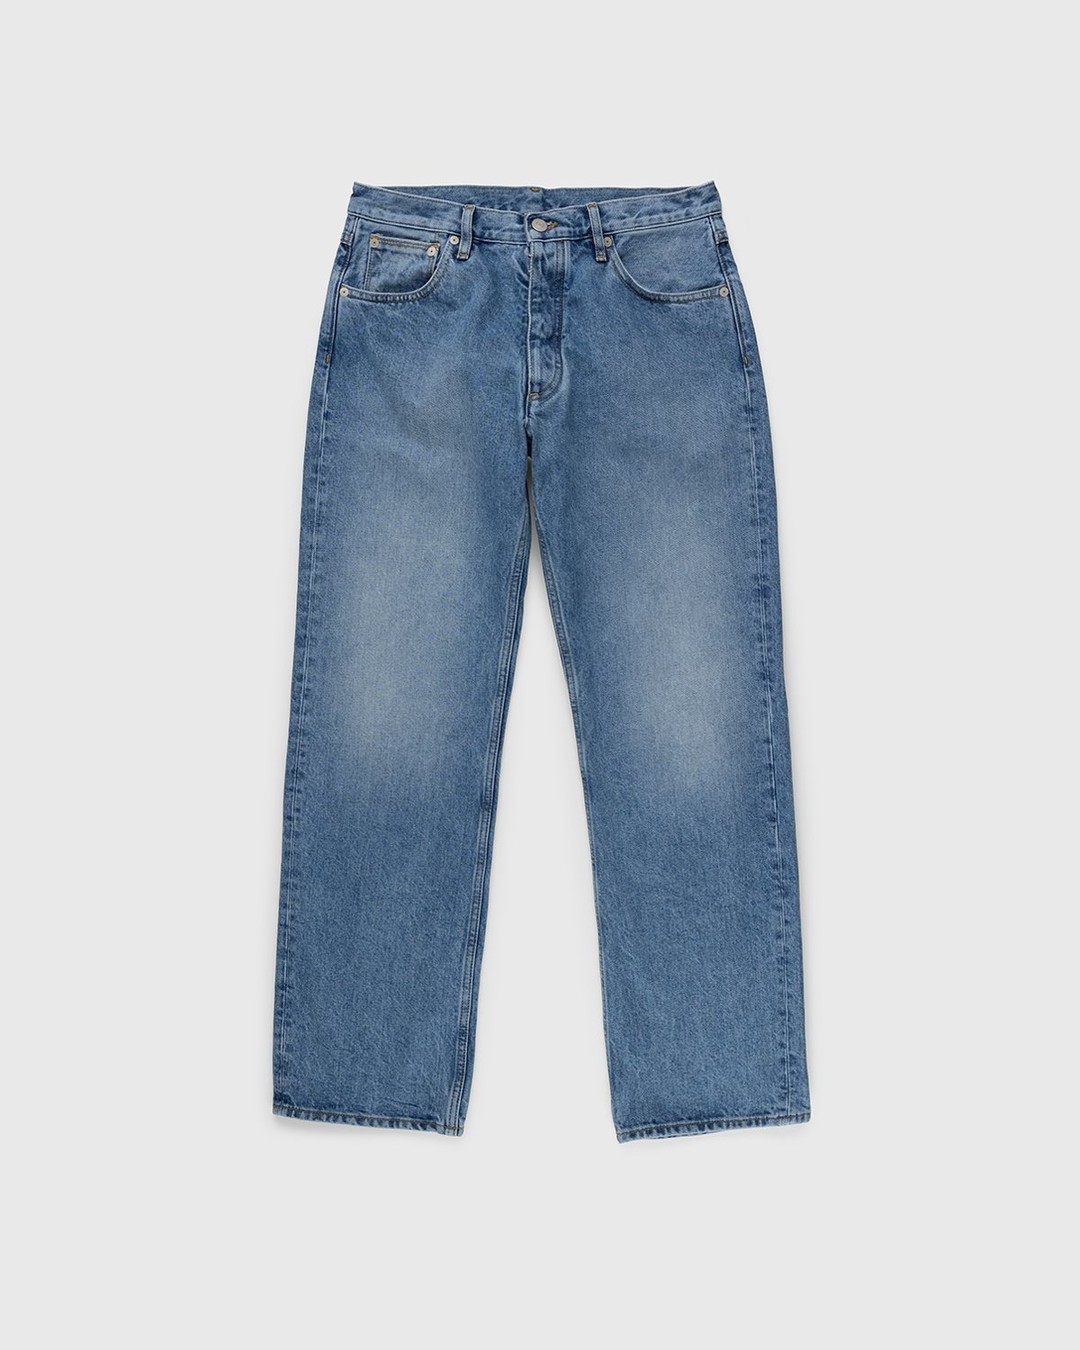 Maison Margiela – Five-Pocket Jeans Blue - Pants - Blue - Image 1